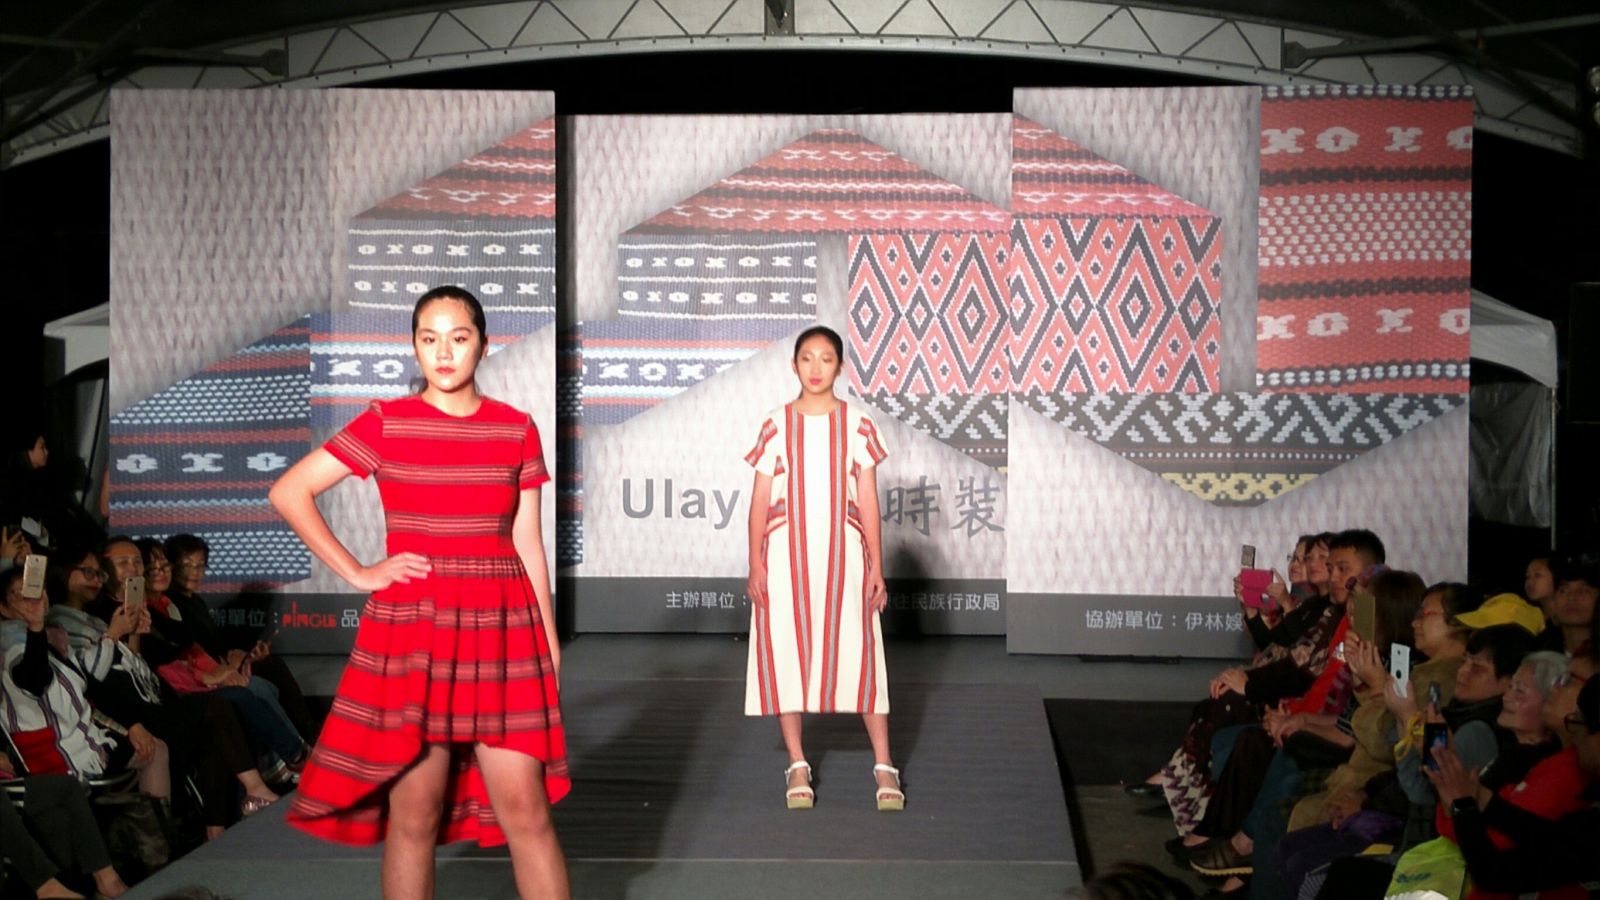 國際服裝設計師潘怡良設計作品「Ulay 編織時裝秀」活動照片共9張